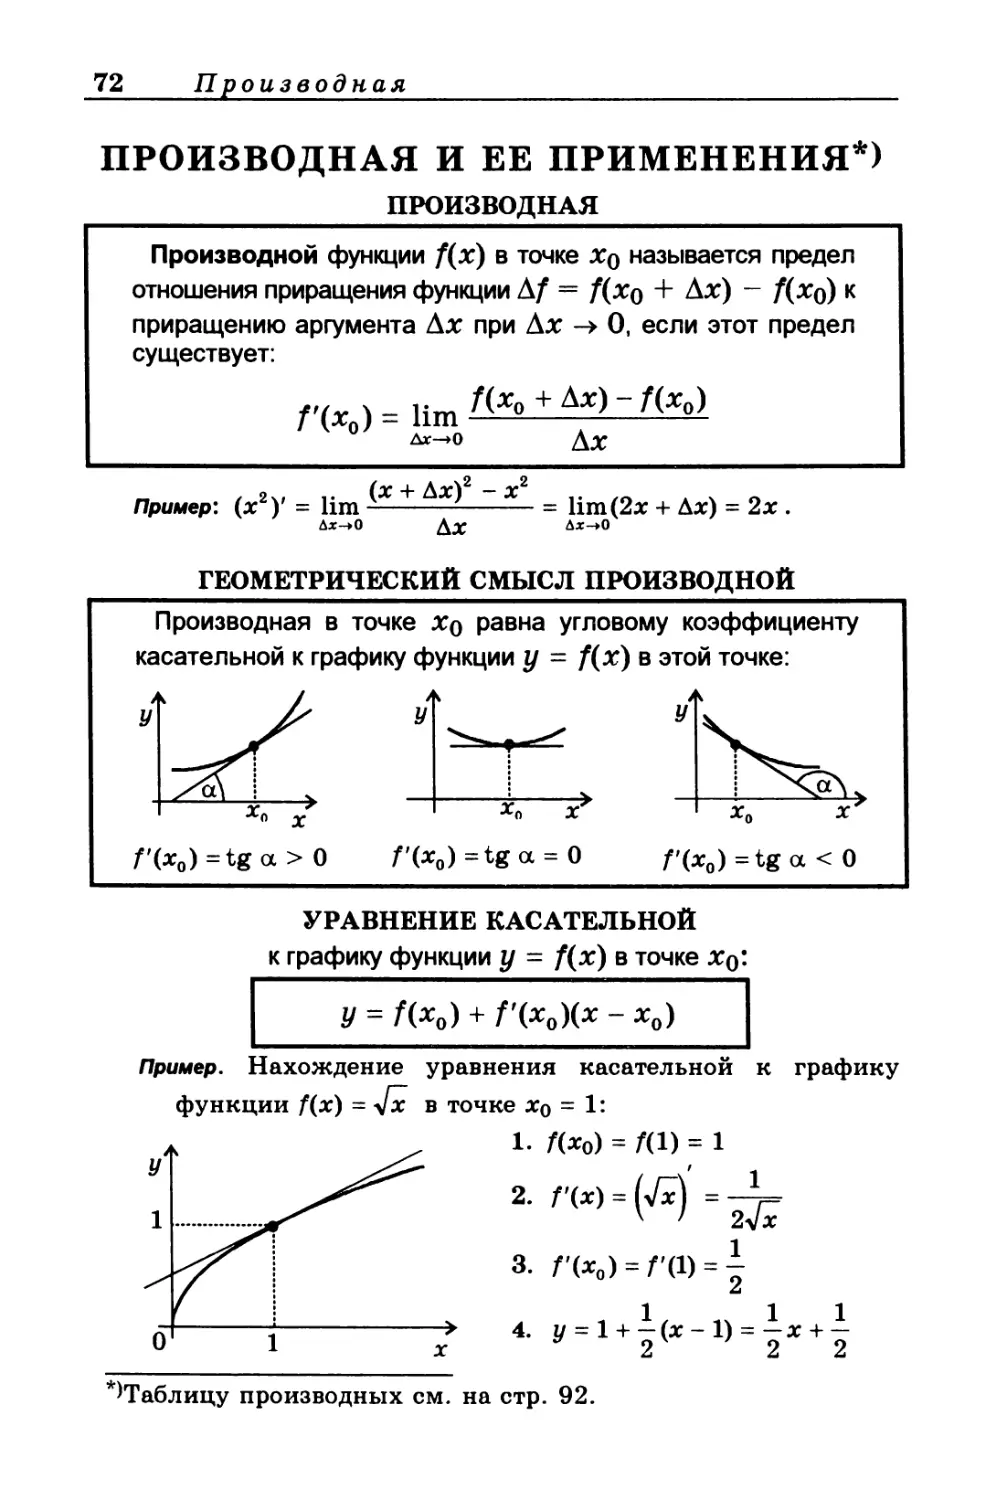 ПРОИЗВОДНАЯ И ЕЁ ПРИМЕНЕНИЯ
Геометрический смысл производной
Уравнение касательной